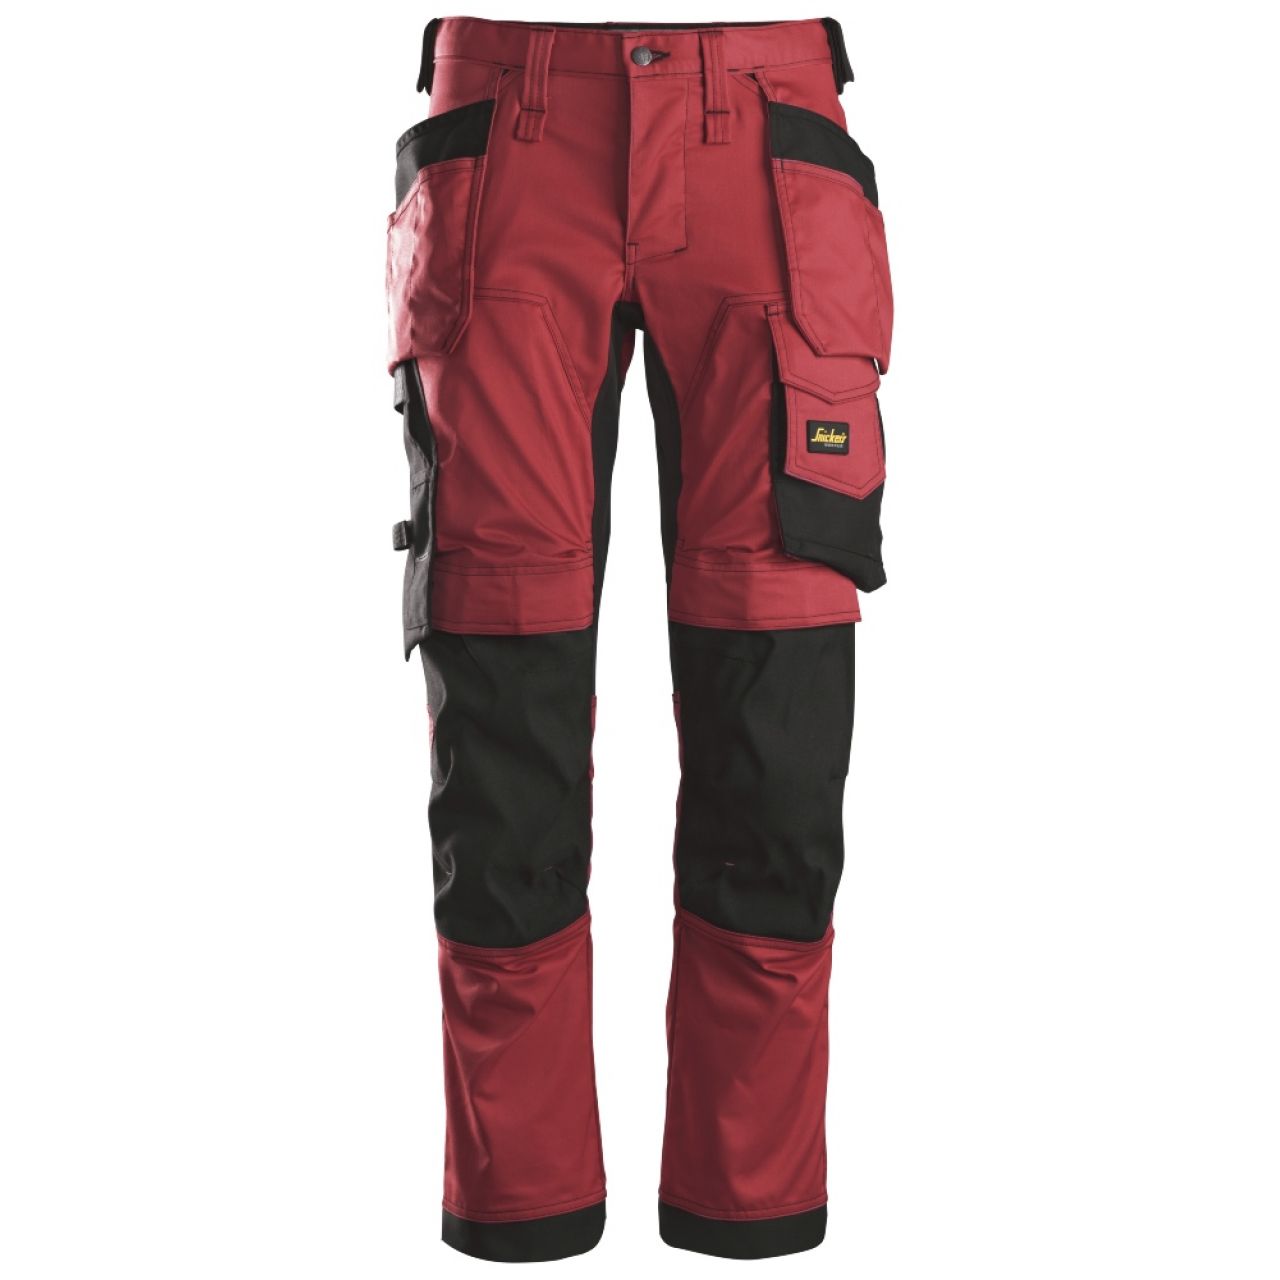 6241 Pantalones largos de trabajo elásticos con bolsillos flotantes AllroundWork rojo-negro talla 52